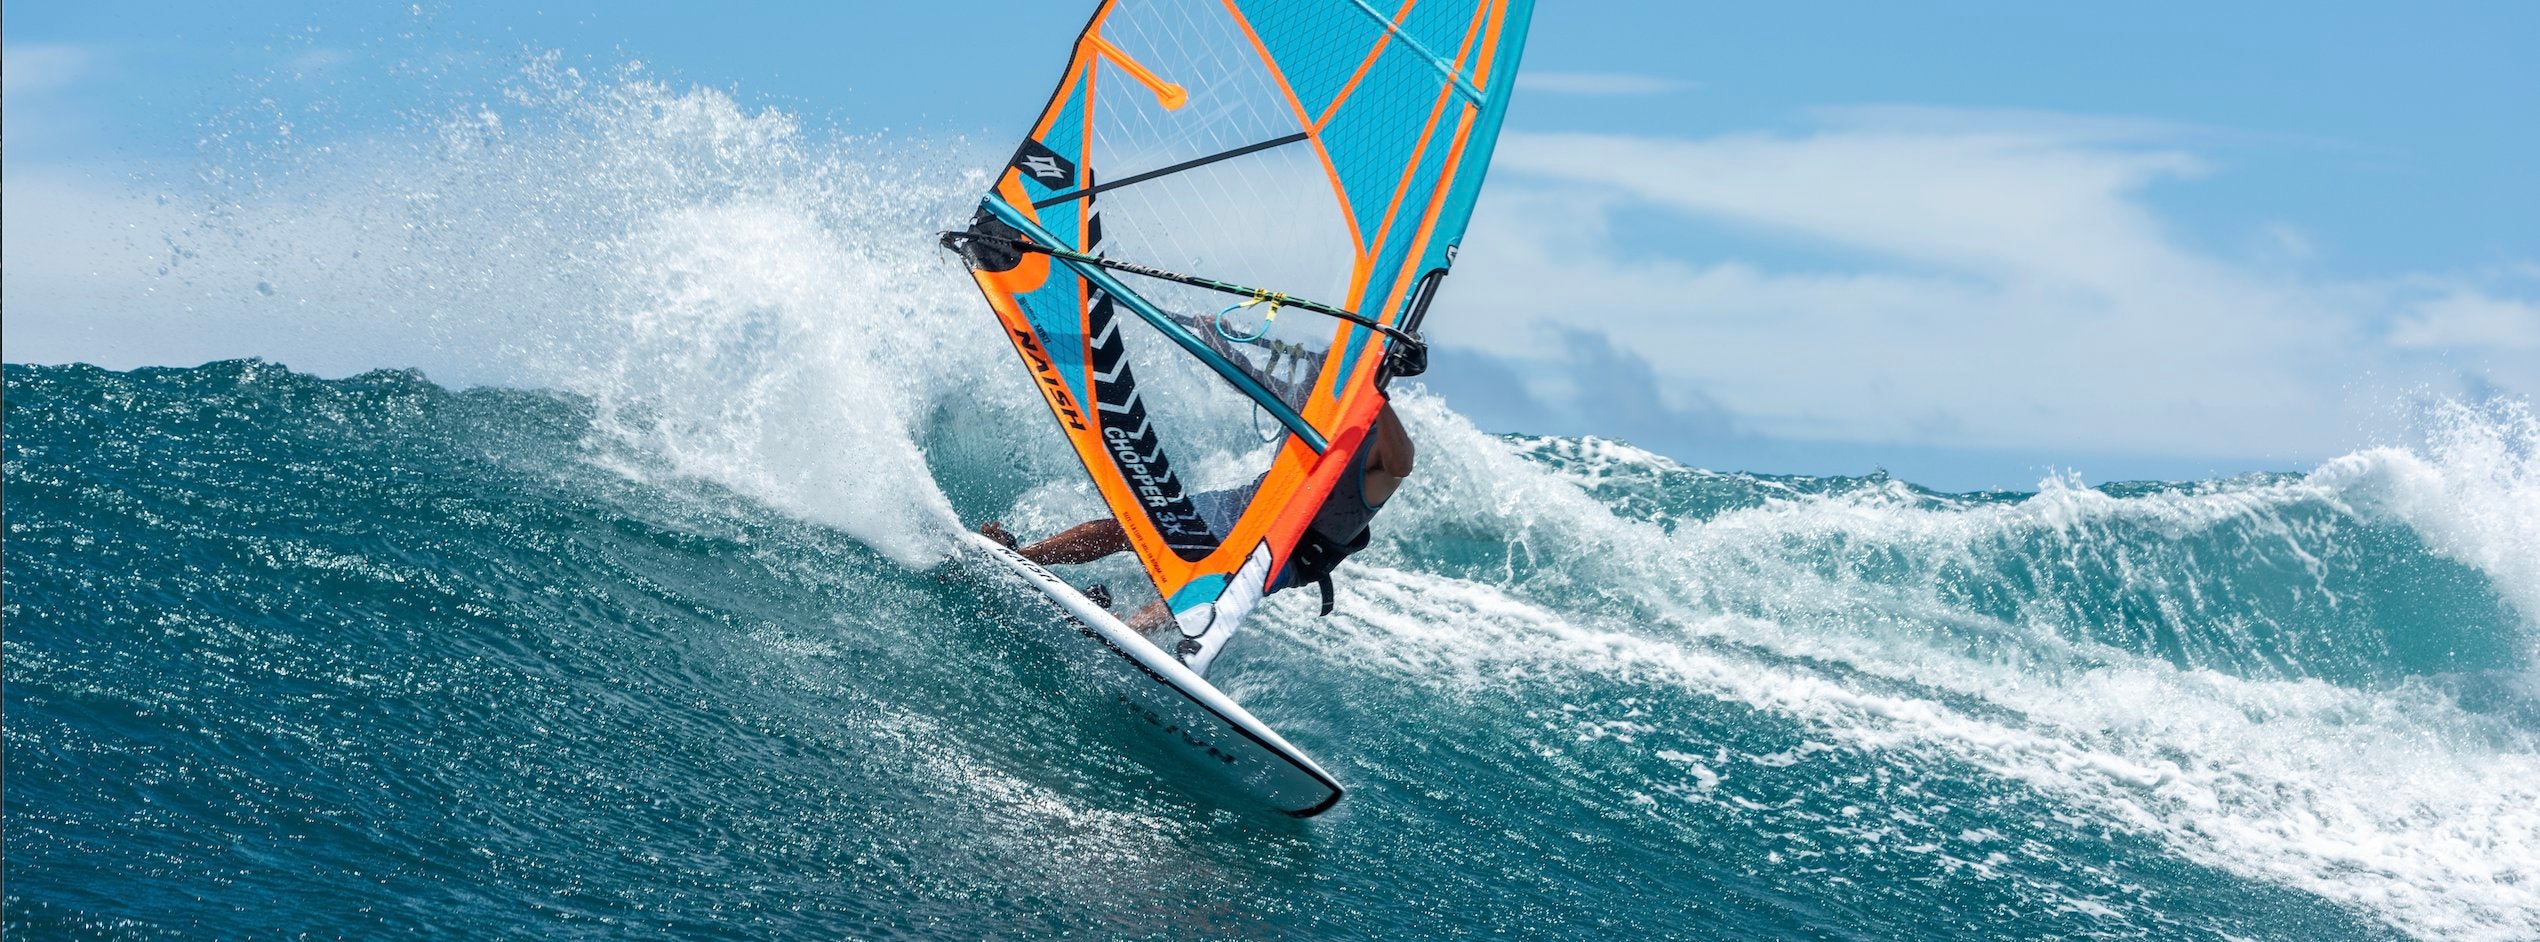 Windsurf Boards - Naish.com